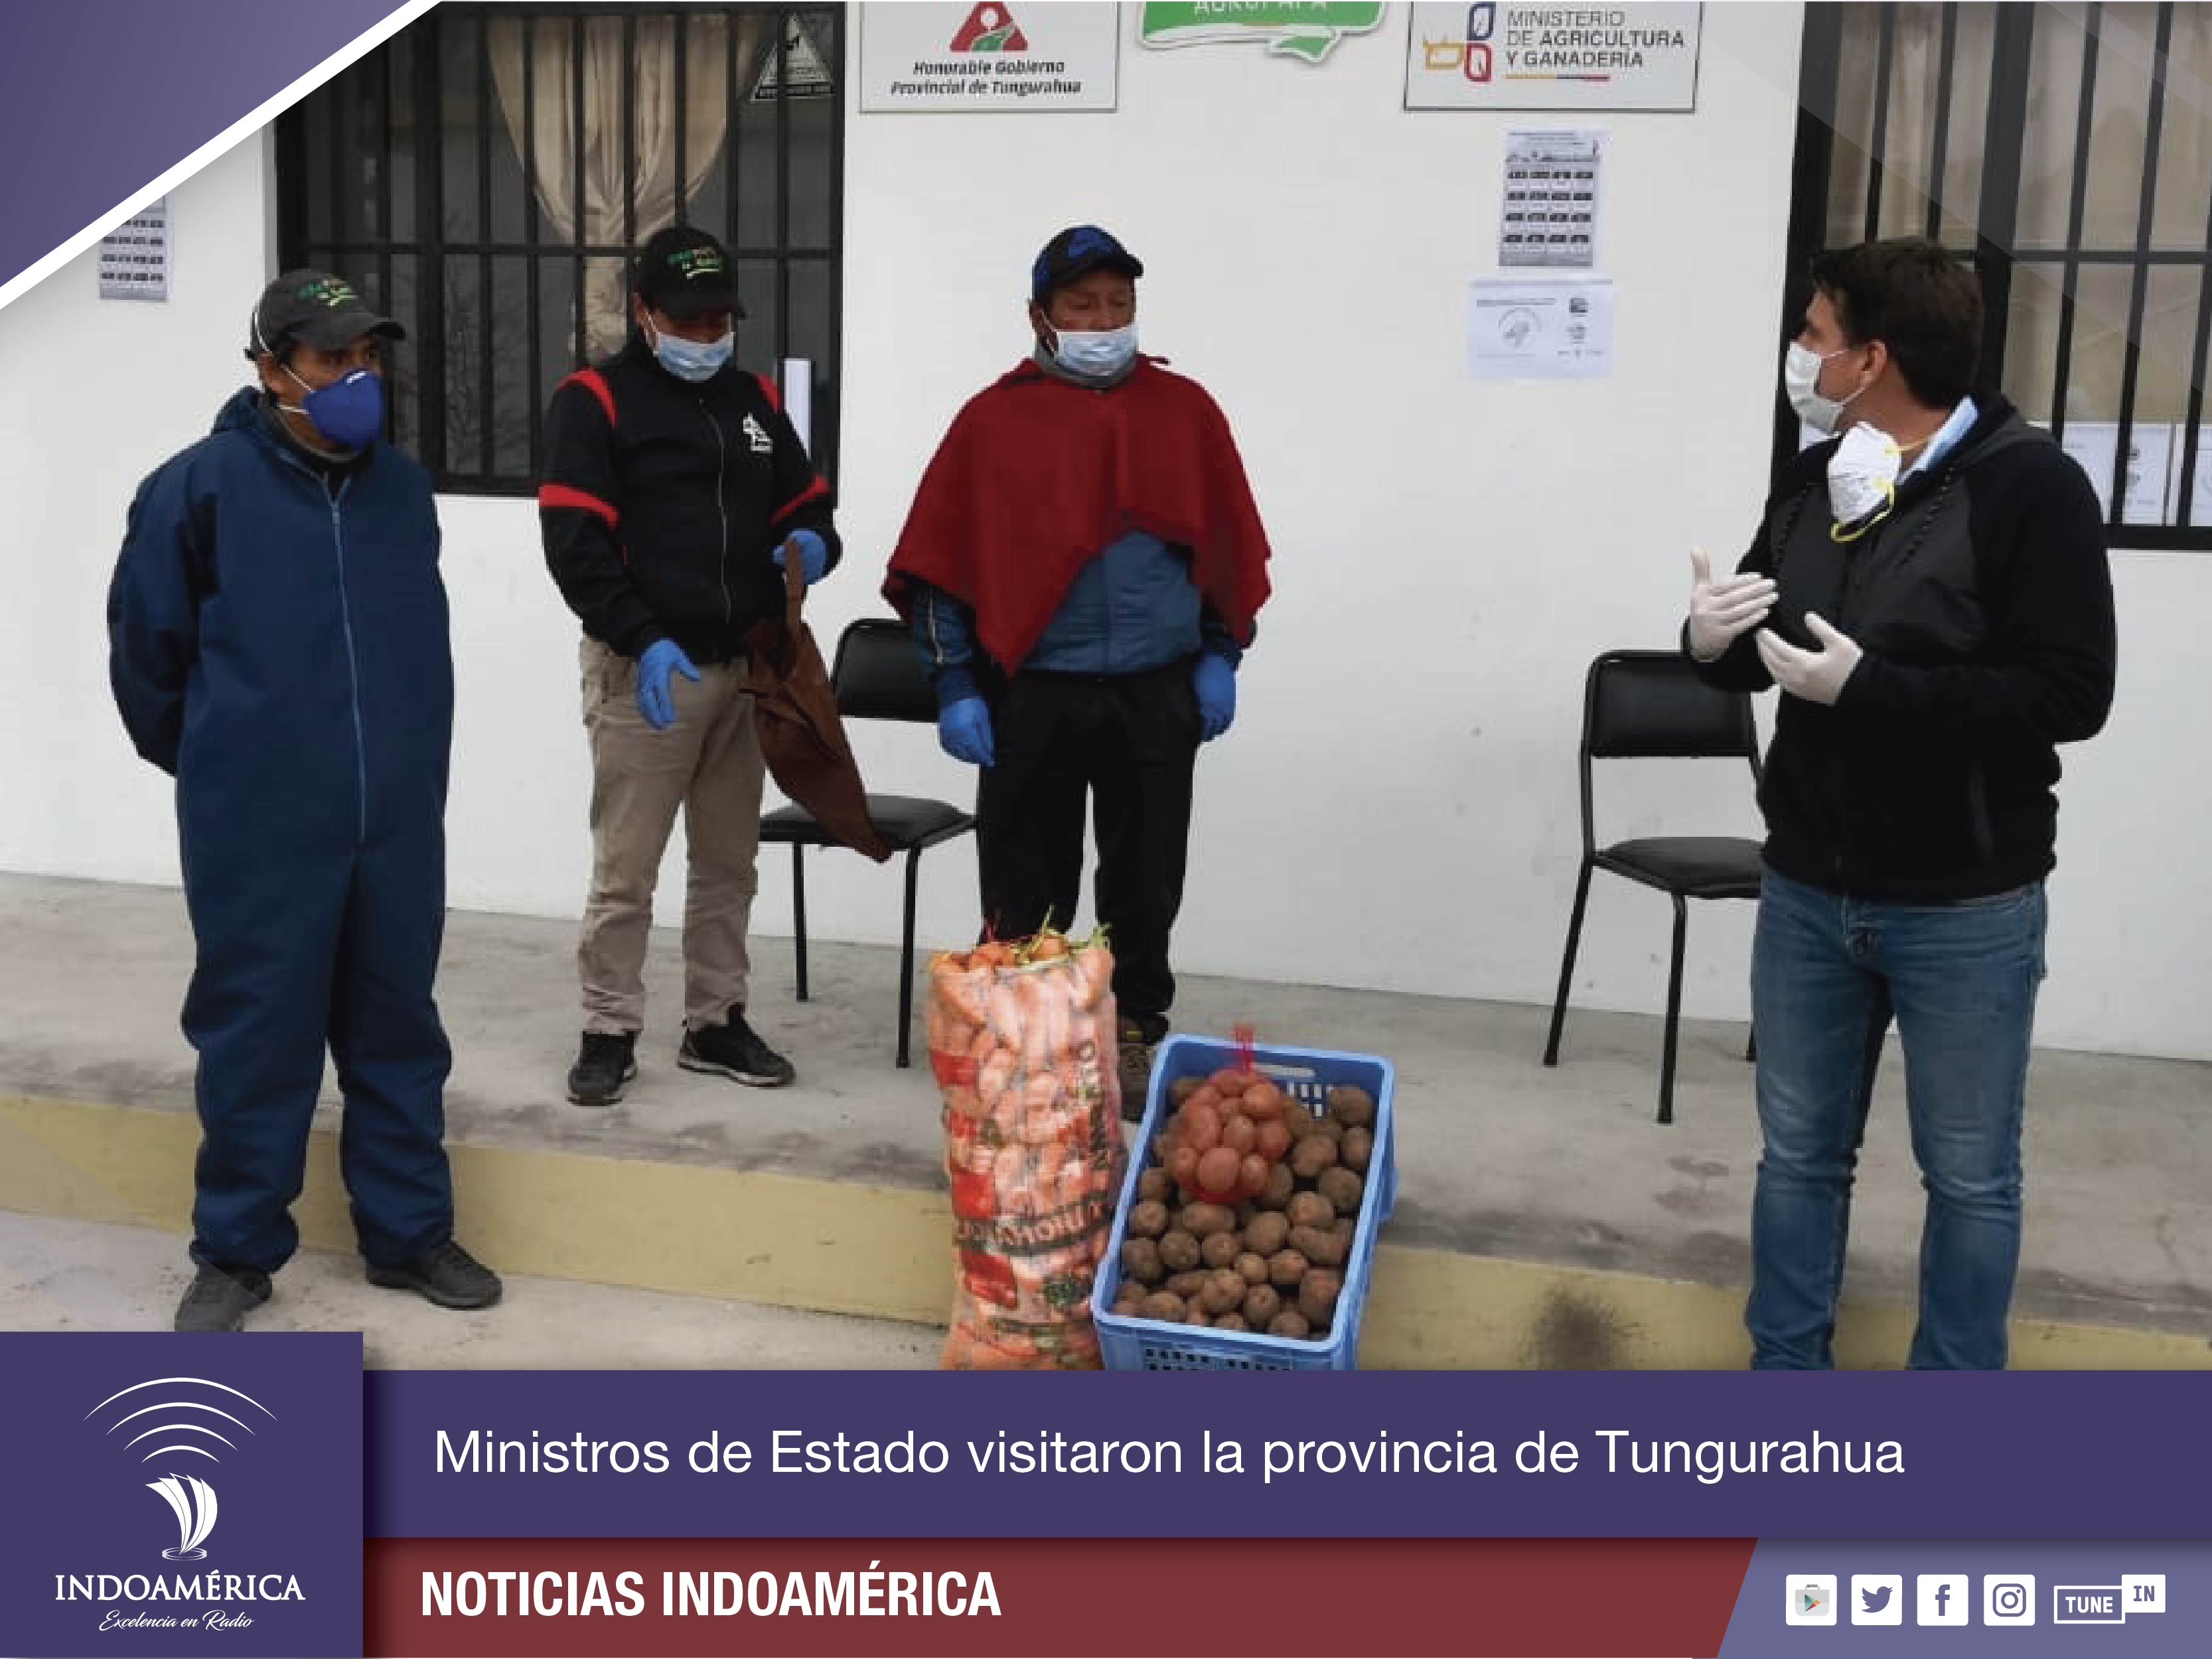 Tungurahua aporta con productos para la alimentación de los guayaquileños